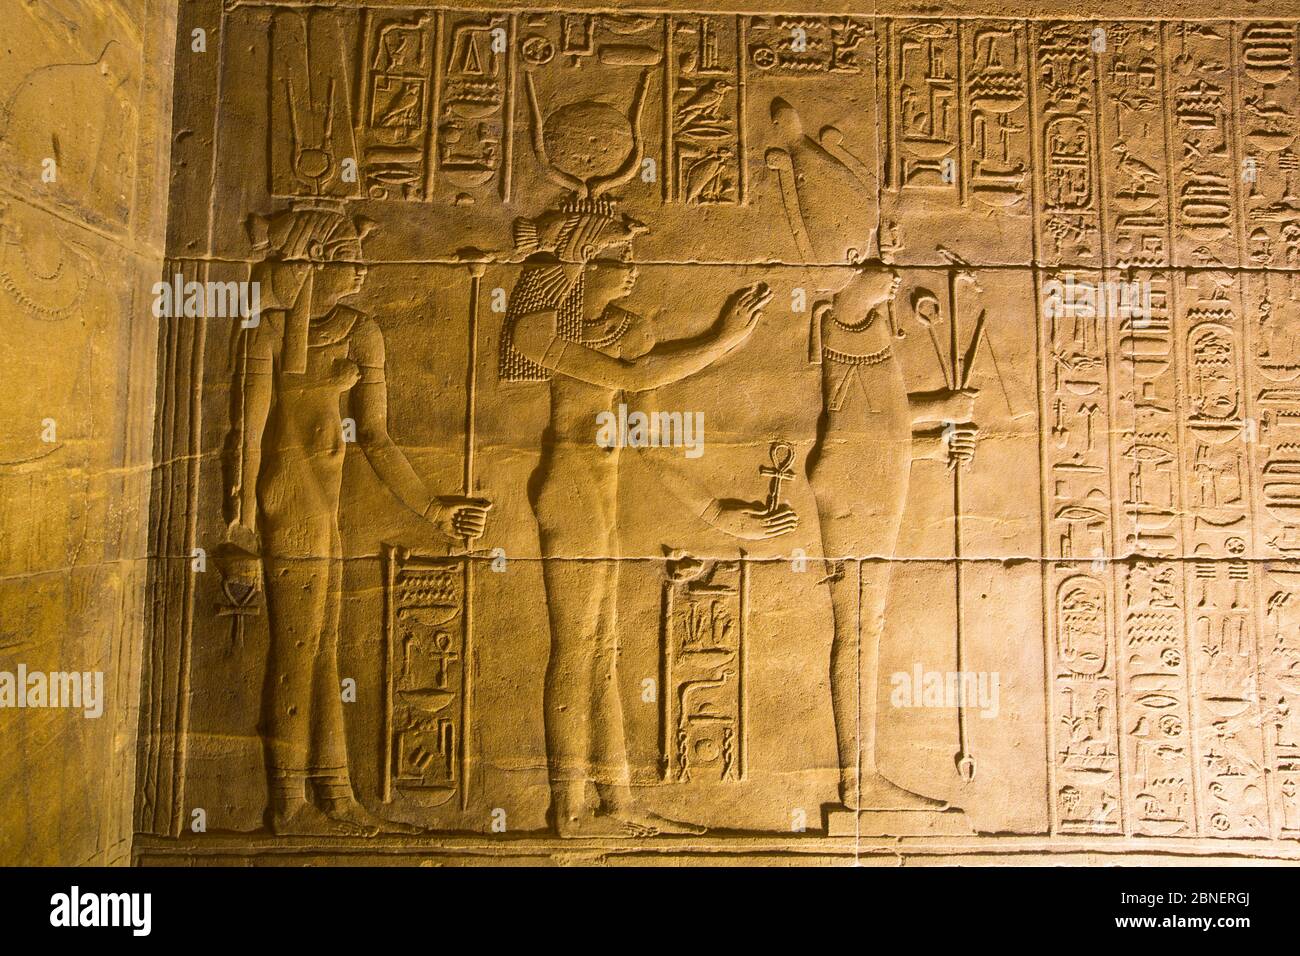 Rilievi nel Santuario, Tempio di Iside, Patrimonio dell'Umanità dell'UNESCO, Isola di Philae, Assuan, Egitto Foto Stock